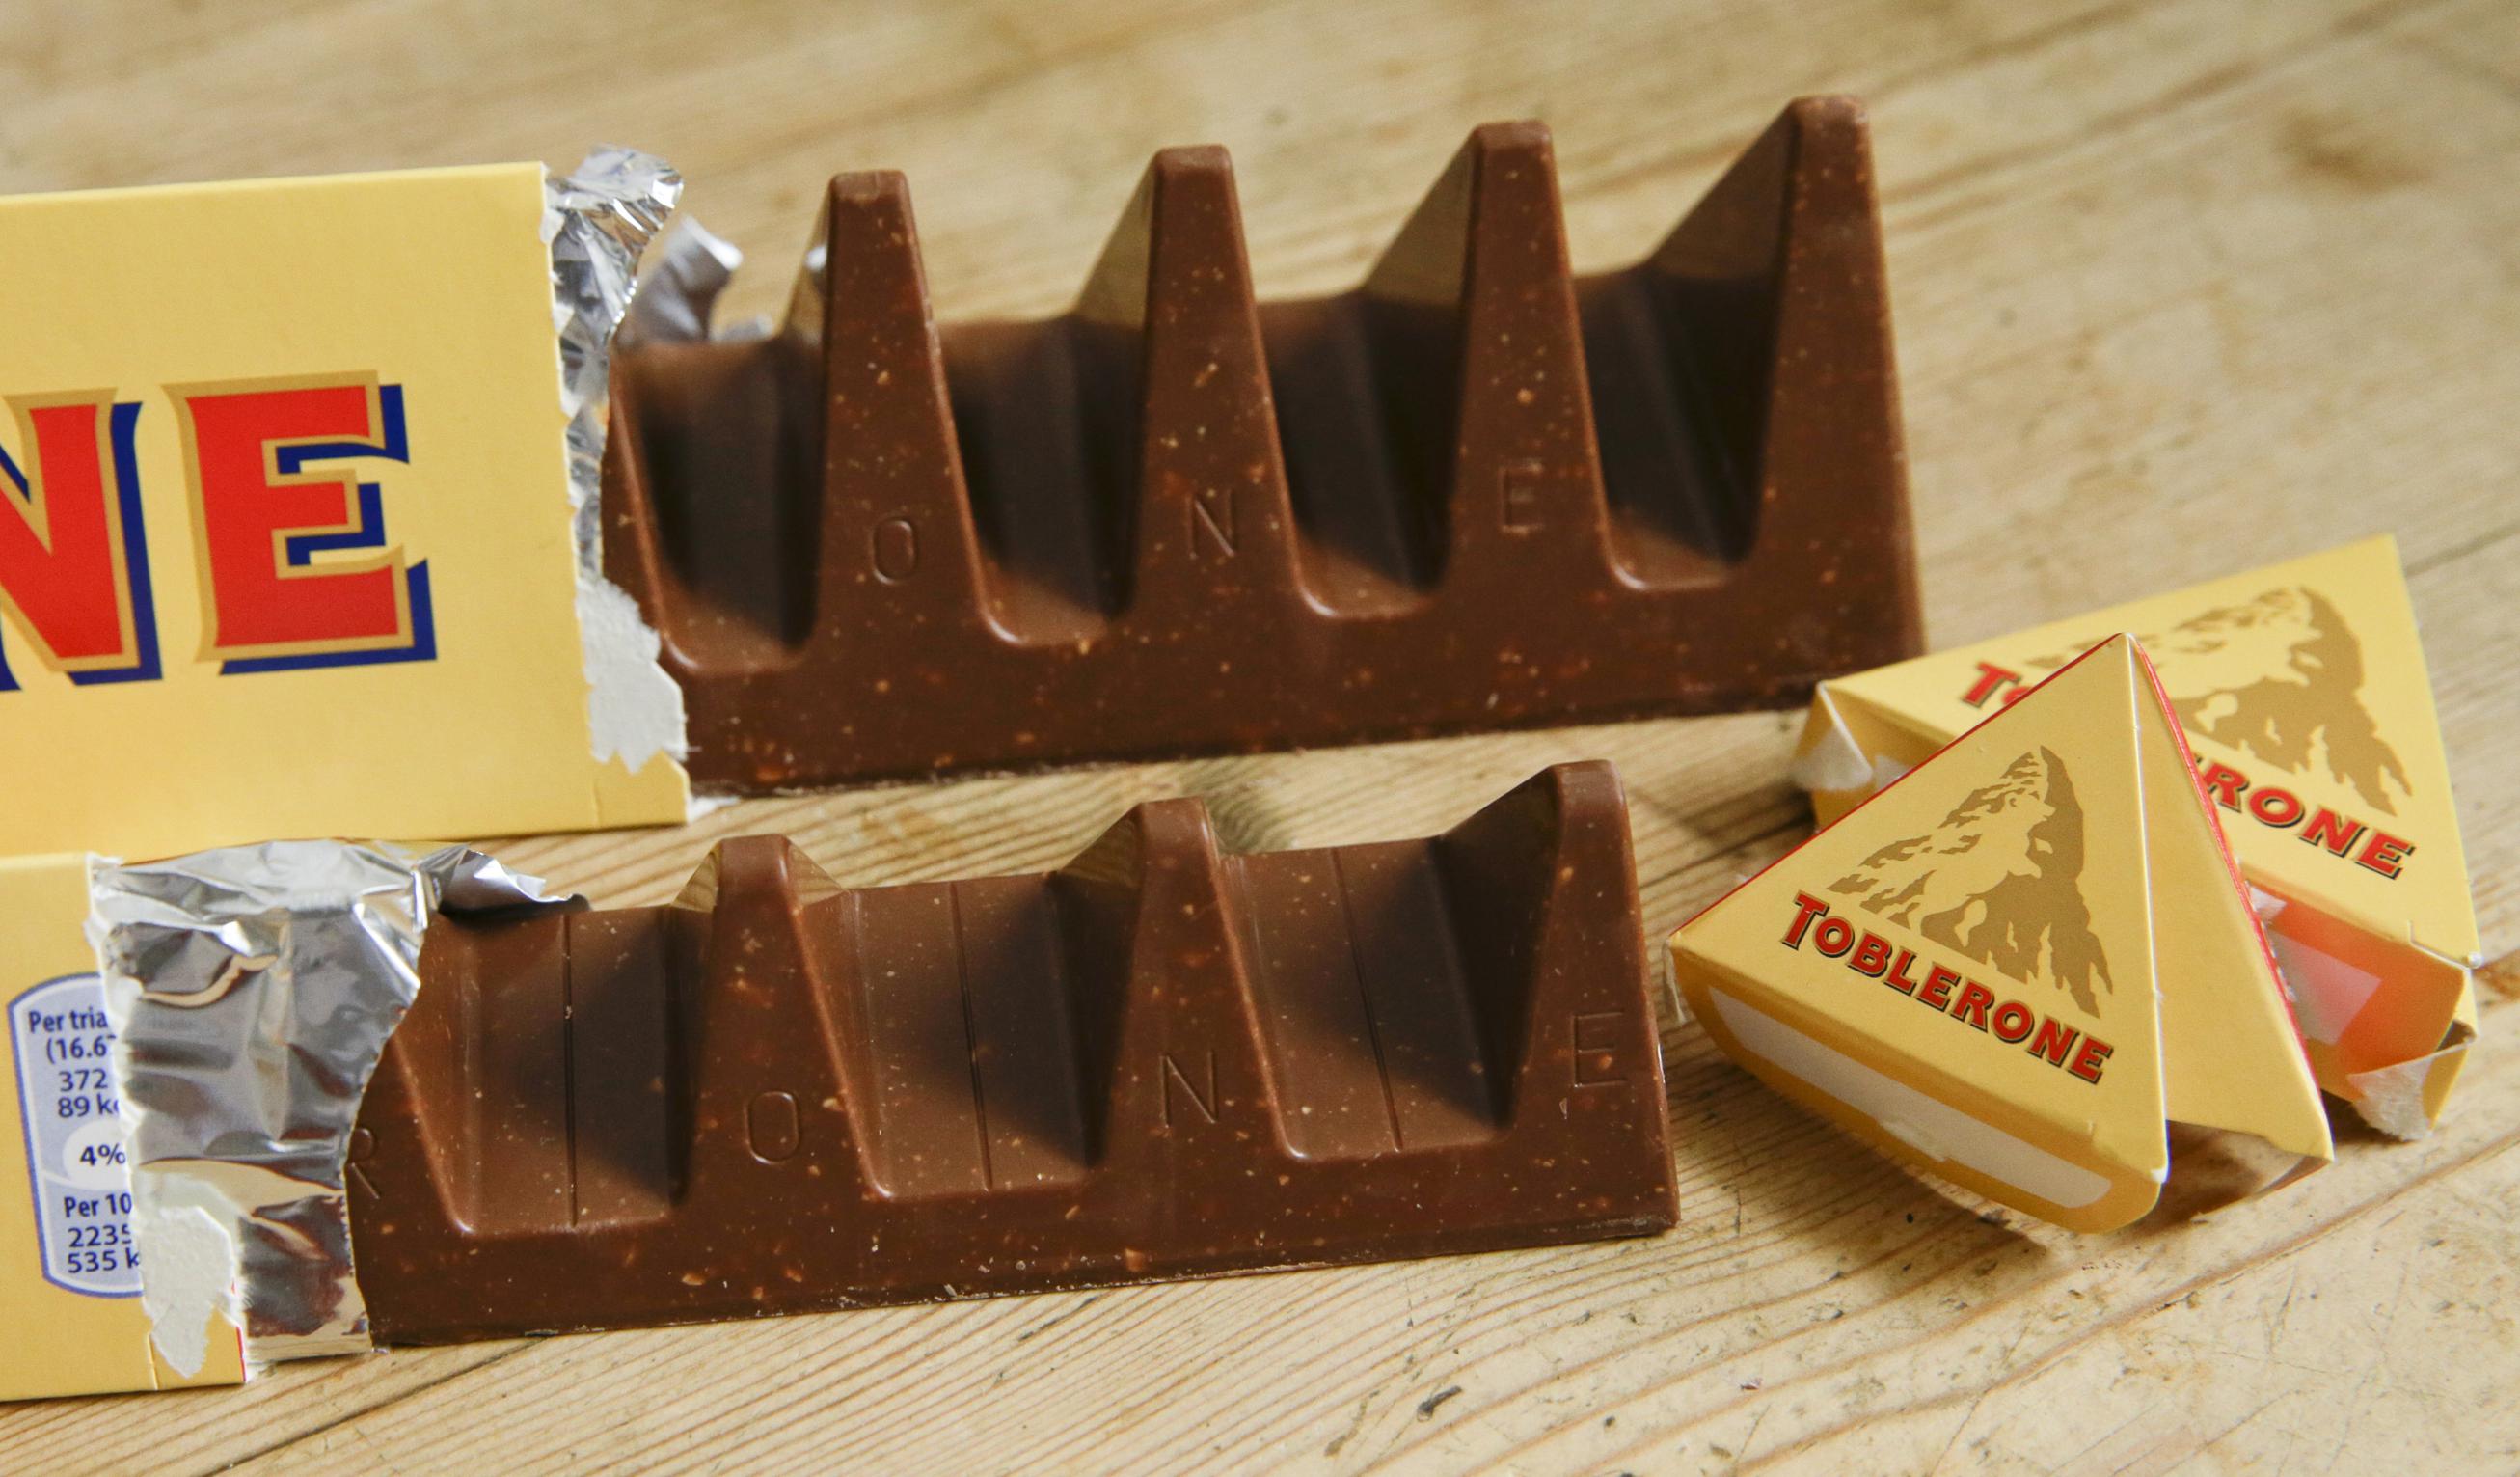 Треугольные батончики Toblerone скоро потеряют швейцарскую идентичность